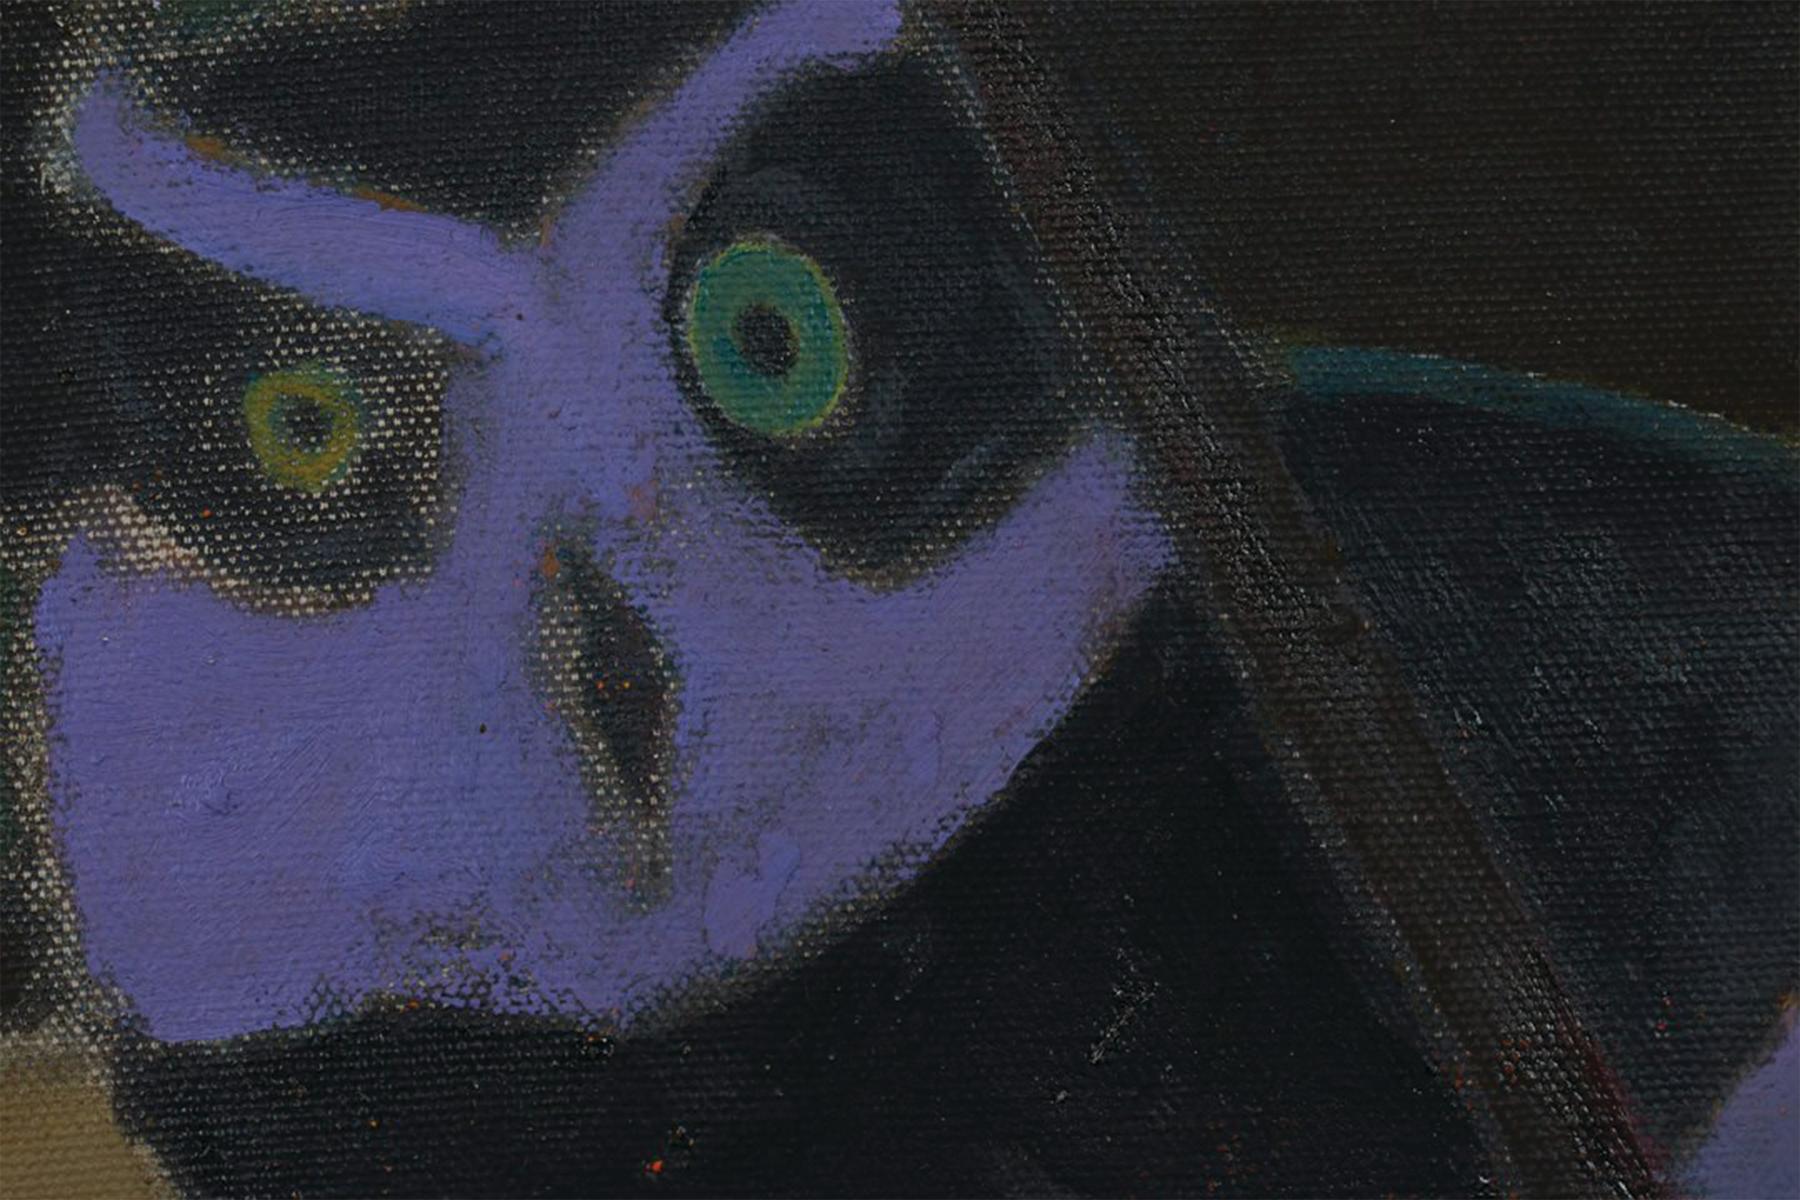 Deux hiboux, 20e siècle - Hiboux violets et verts - Post-impressionnisme Painting par Joseph O'Sickey